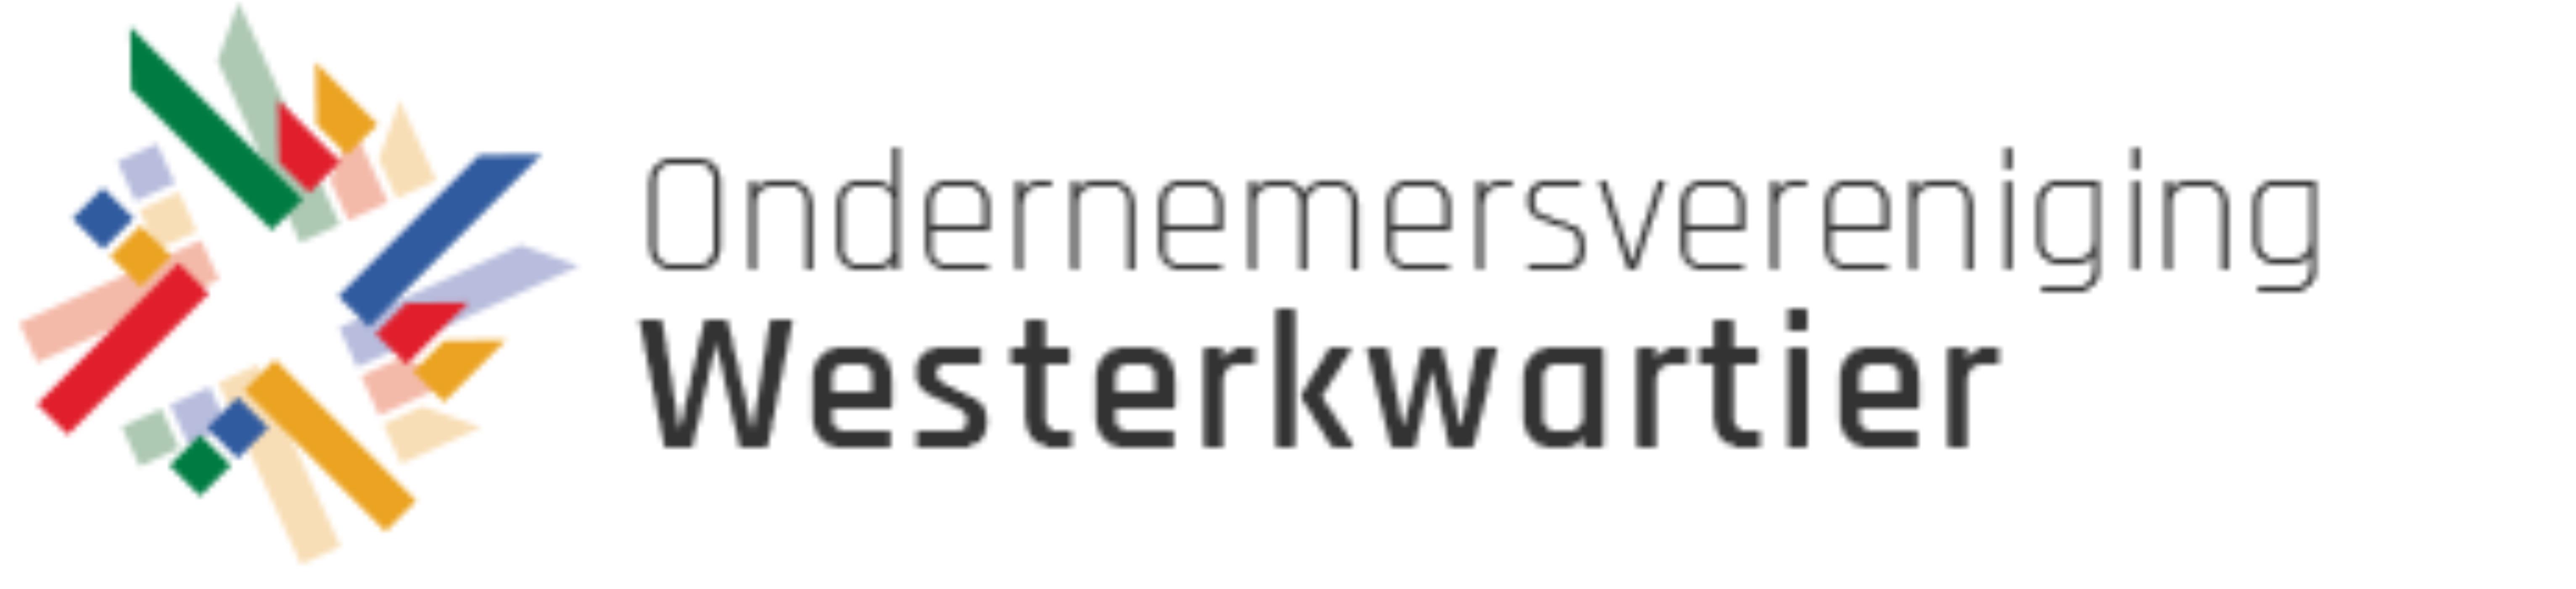 Logo Ondernemersvereniging Westerkwartier